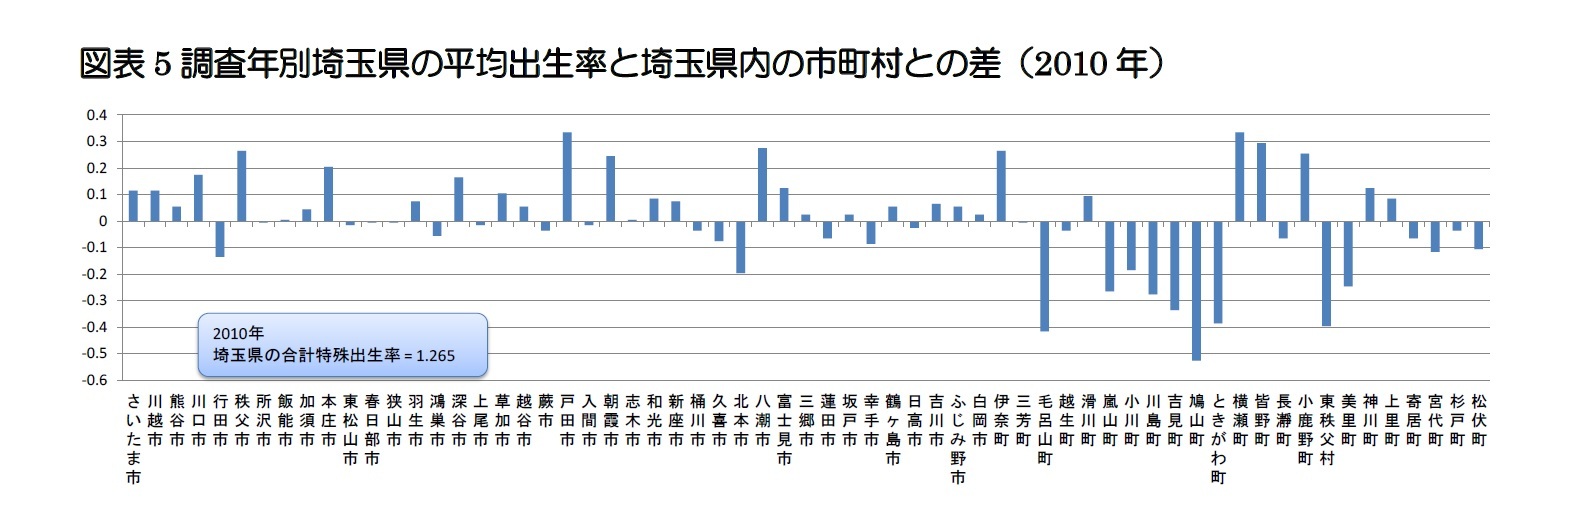 図表5 調査年別埼玉県の平均出生率と埼玉県内の市町村との差（2010年）